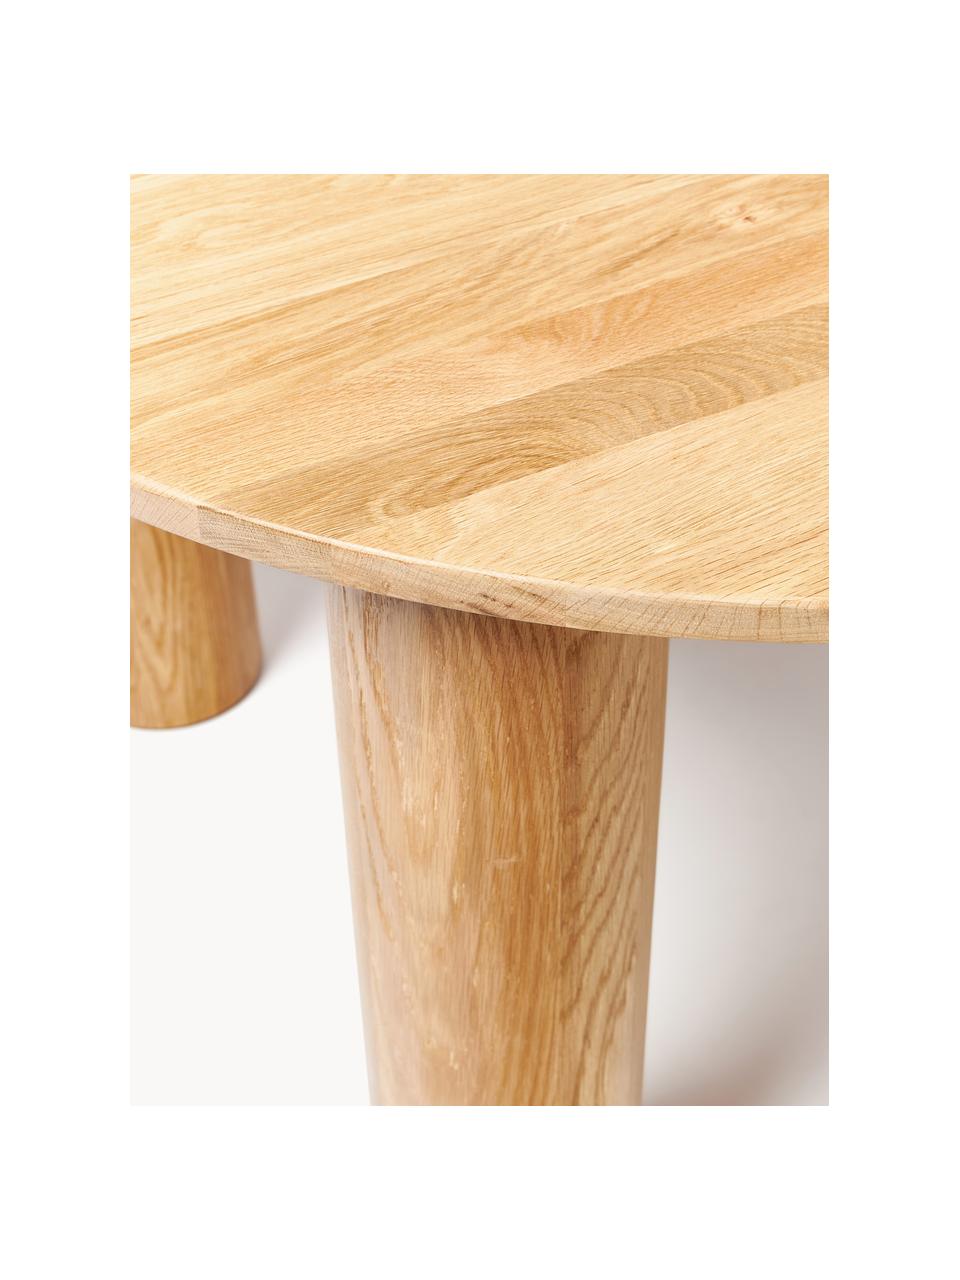 Table ronde en chêne Ohana, Ø 120 cm, Bois de chêne, huilé, certifié FSC

Ce produit est fabriqué à partir de bois certifié FSC® issu d'une exploitation durable, Chêne clair huilé, Ø 120 cm